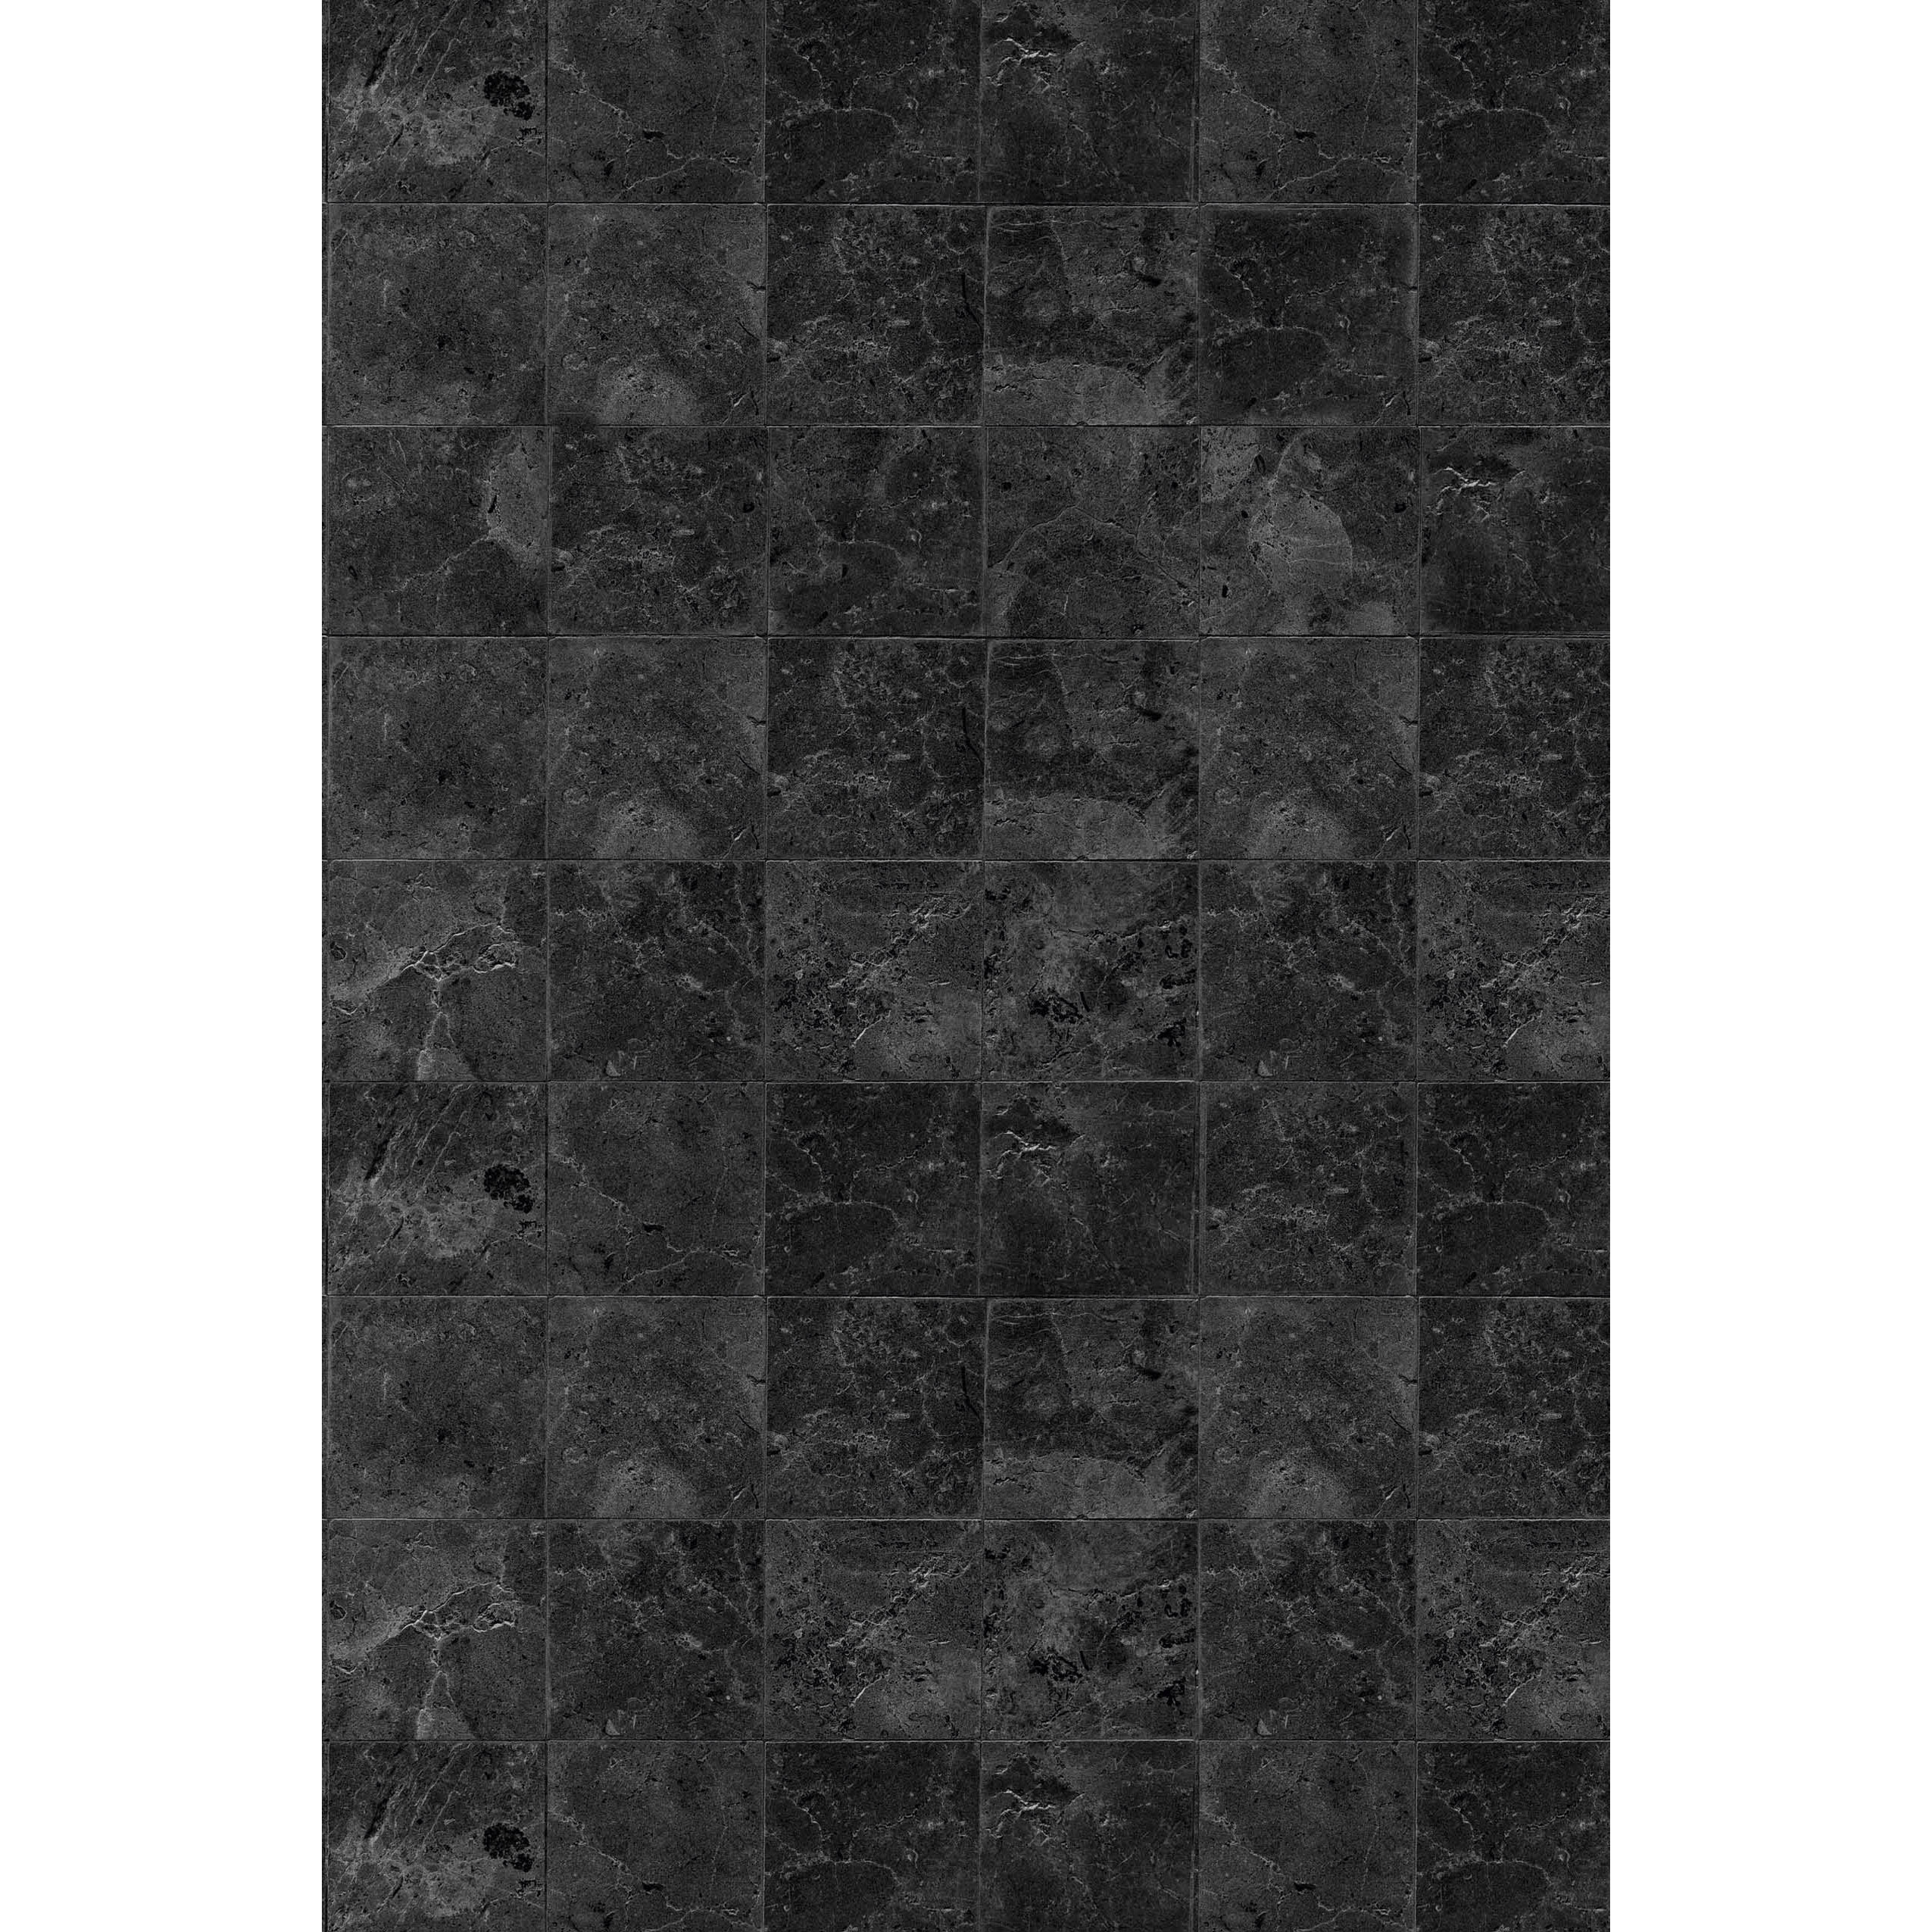 BRESSER Vinyl Backdrop 60 x 90 cm Marble Tiles